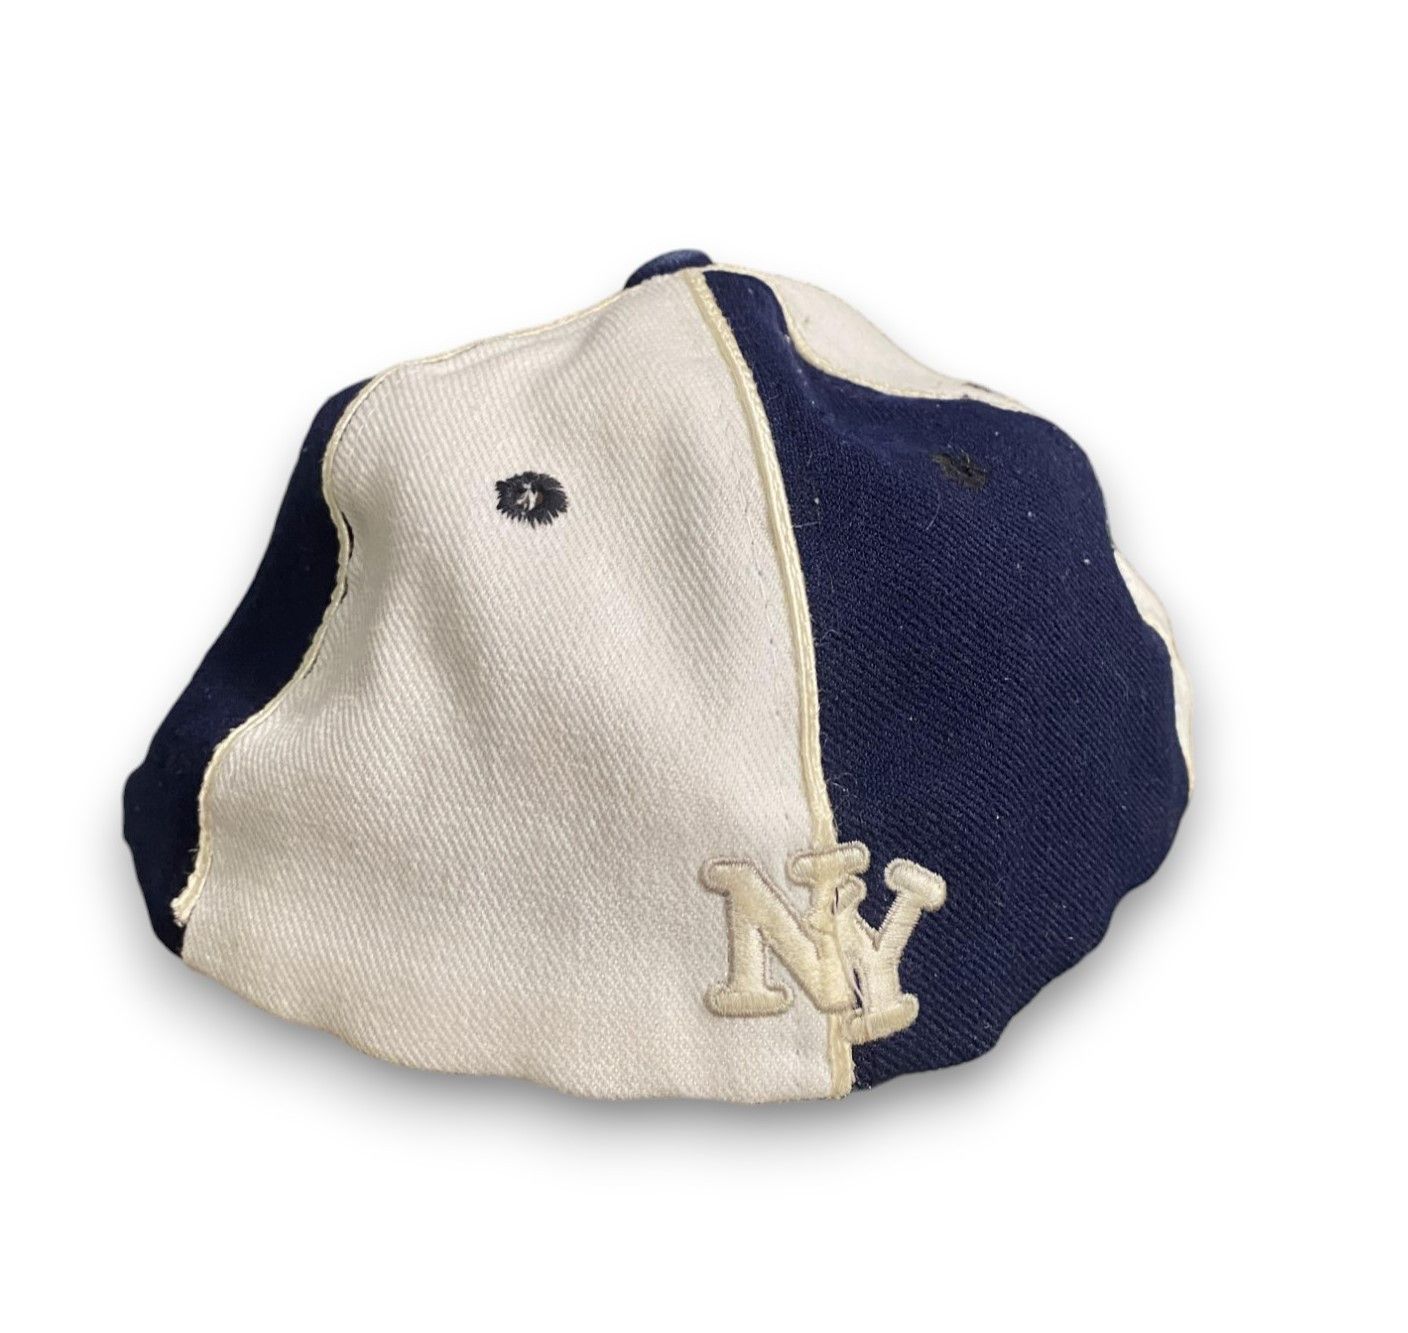 Pinwheel Multifit New York Yankees Vintage SnapBack Cap Hat - 5